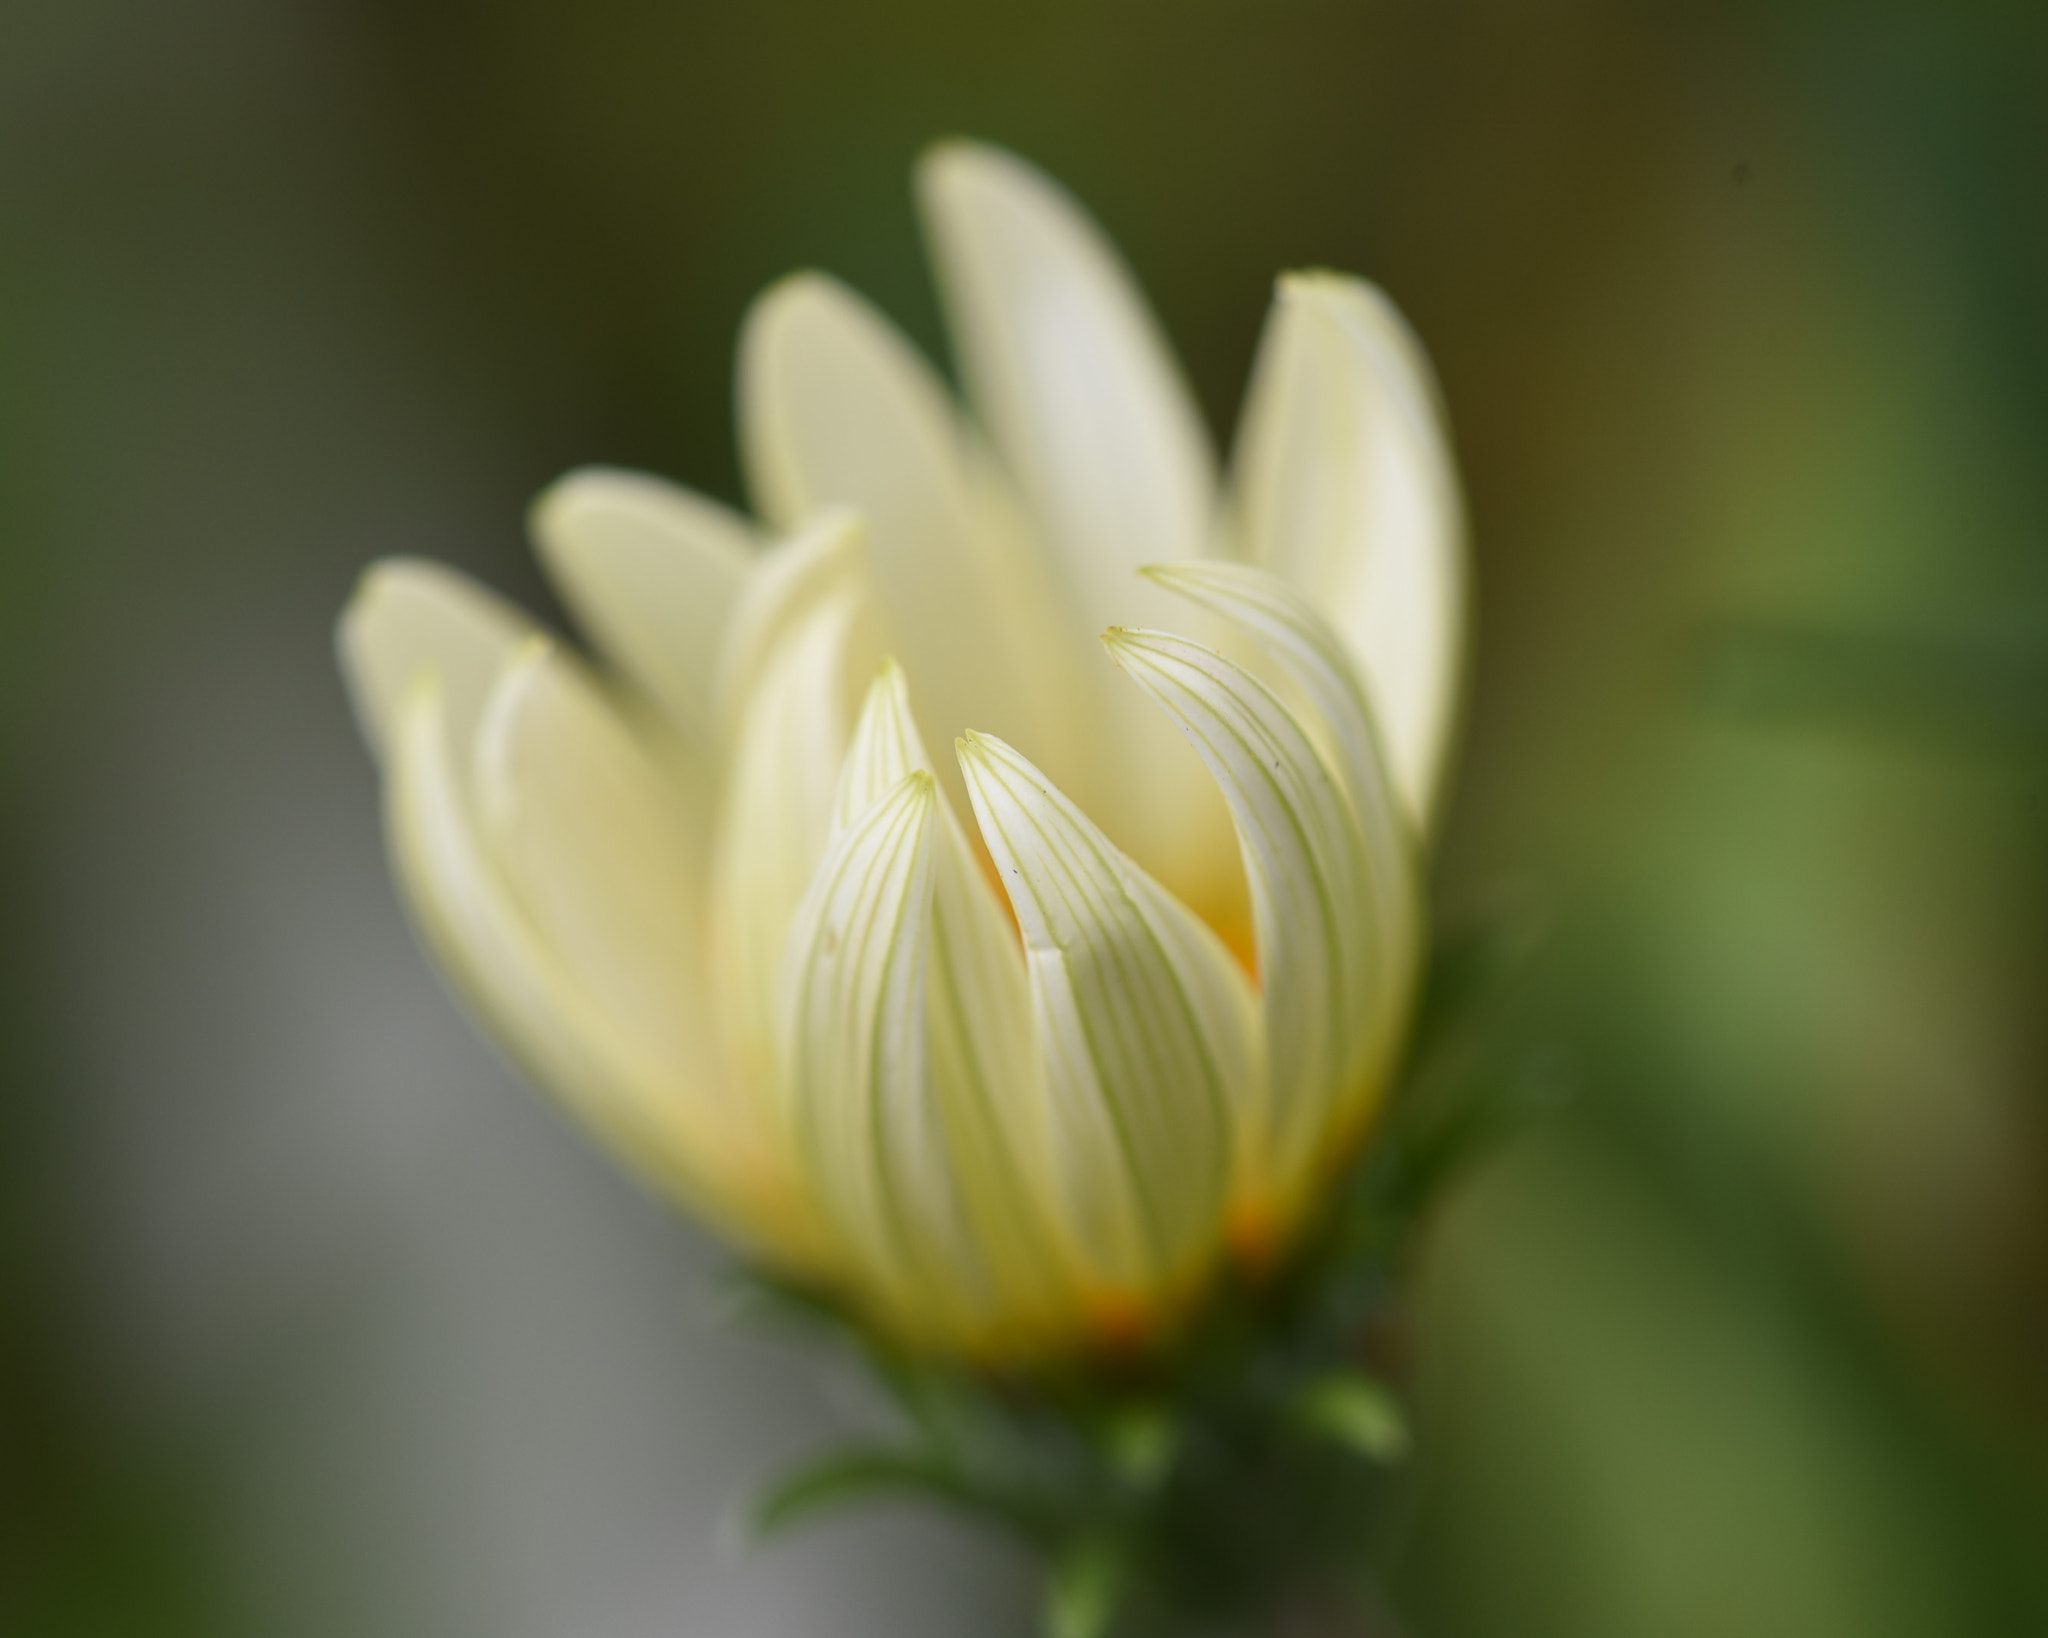 Nikon D750 sample photo. Daisy flower photography